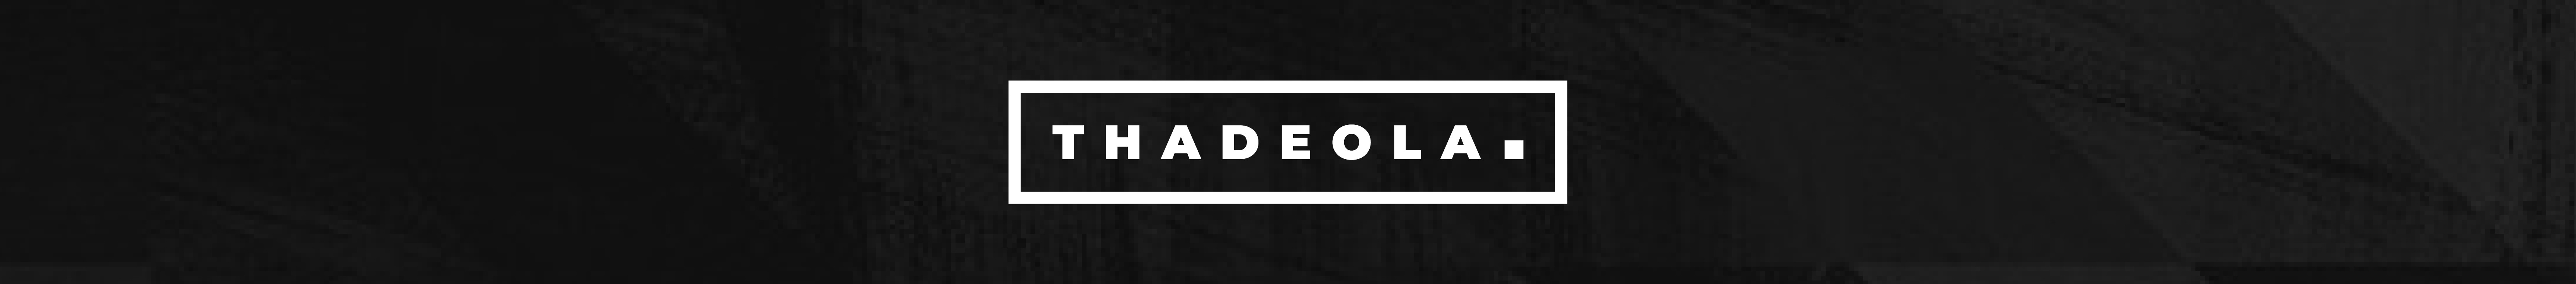 Adeola Mosudi's profile banner